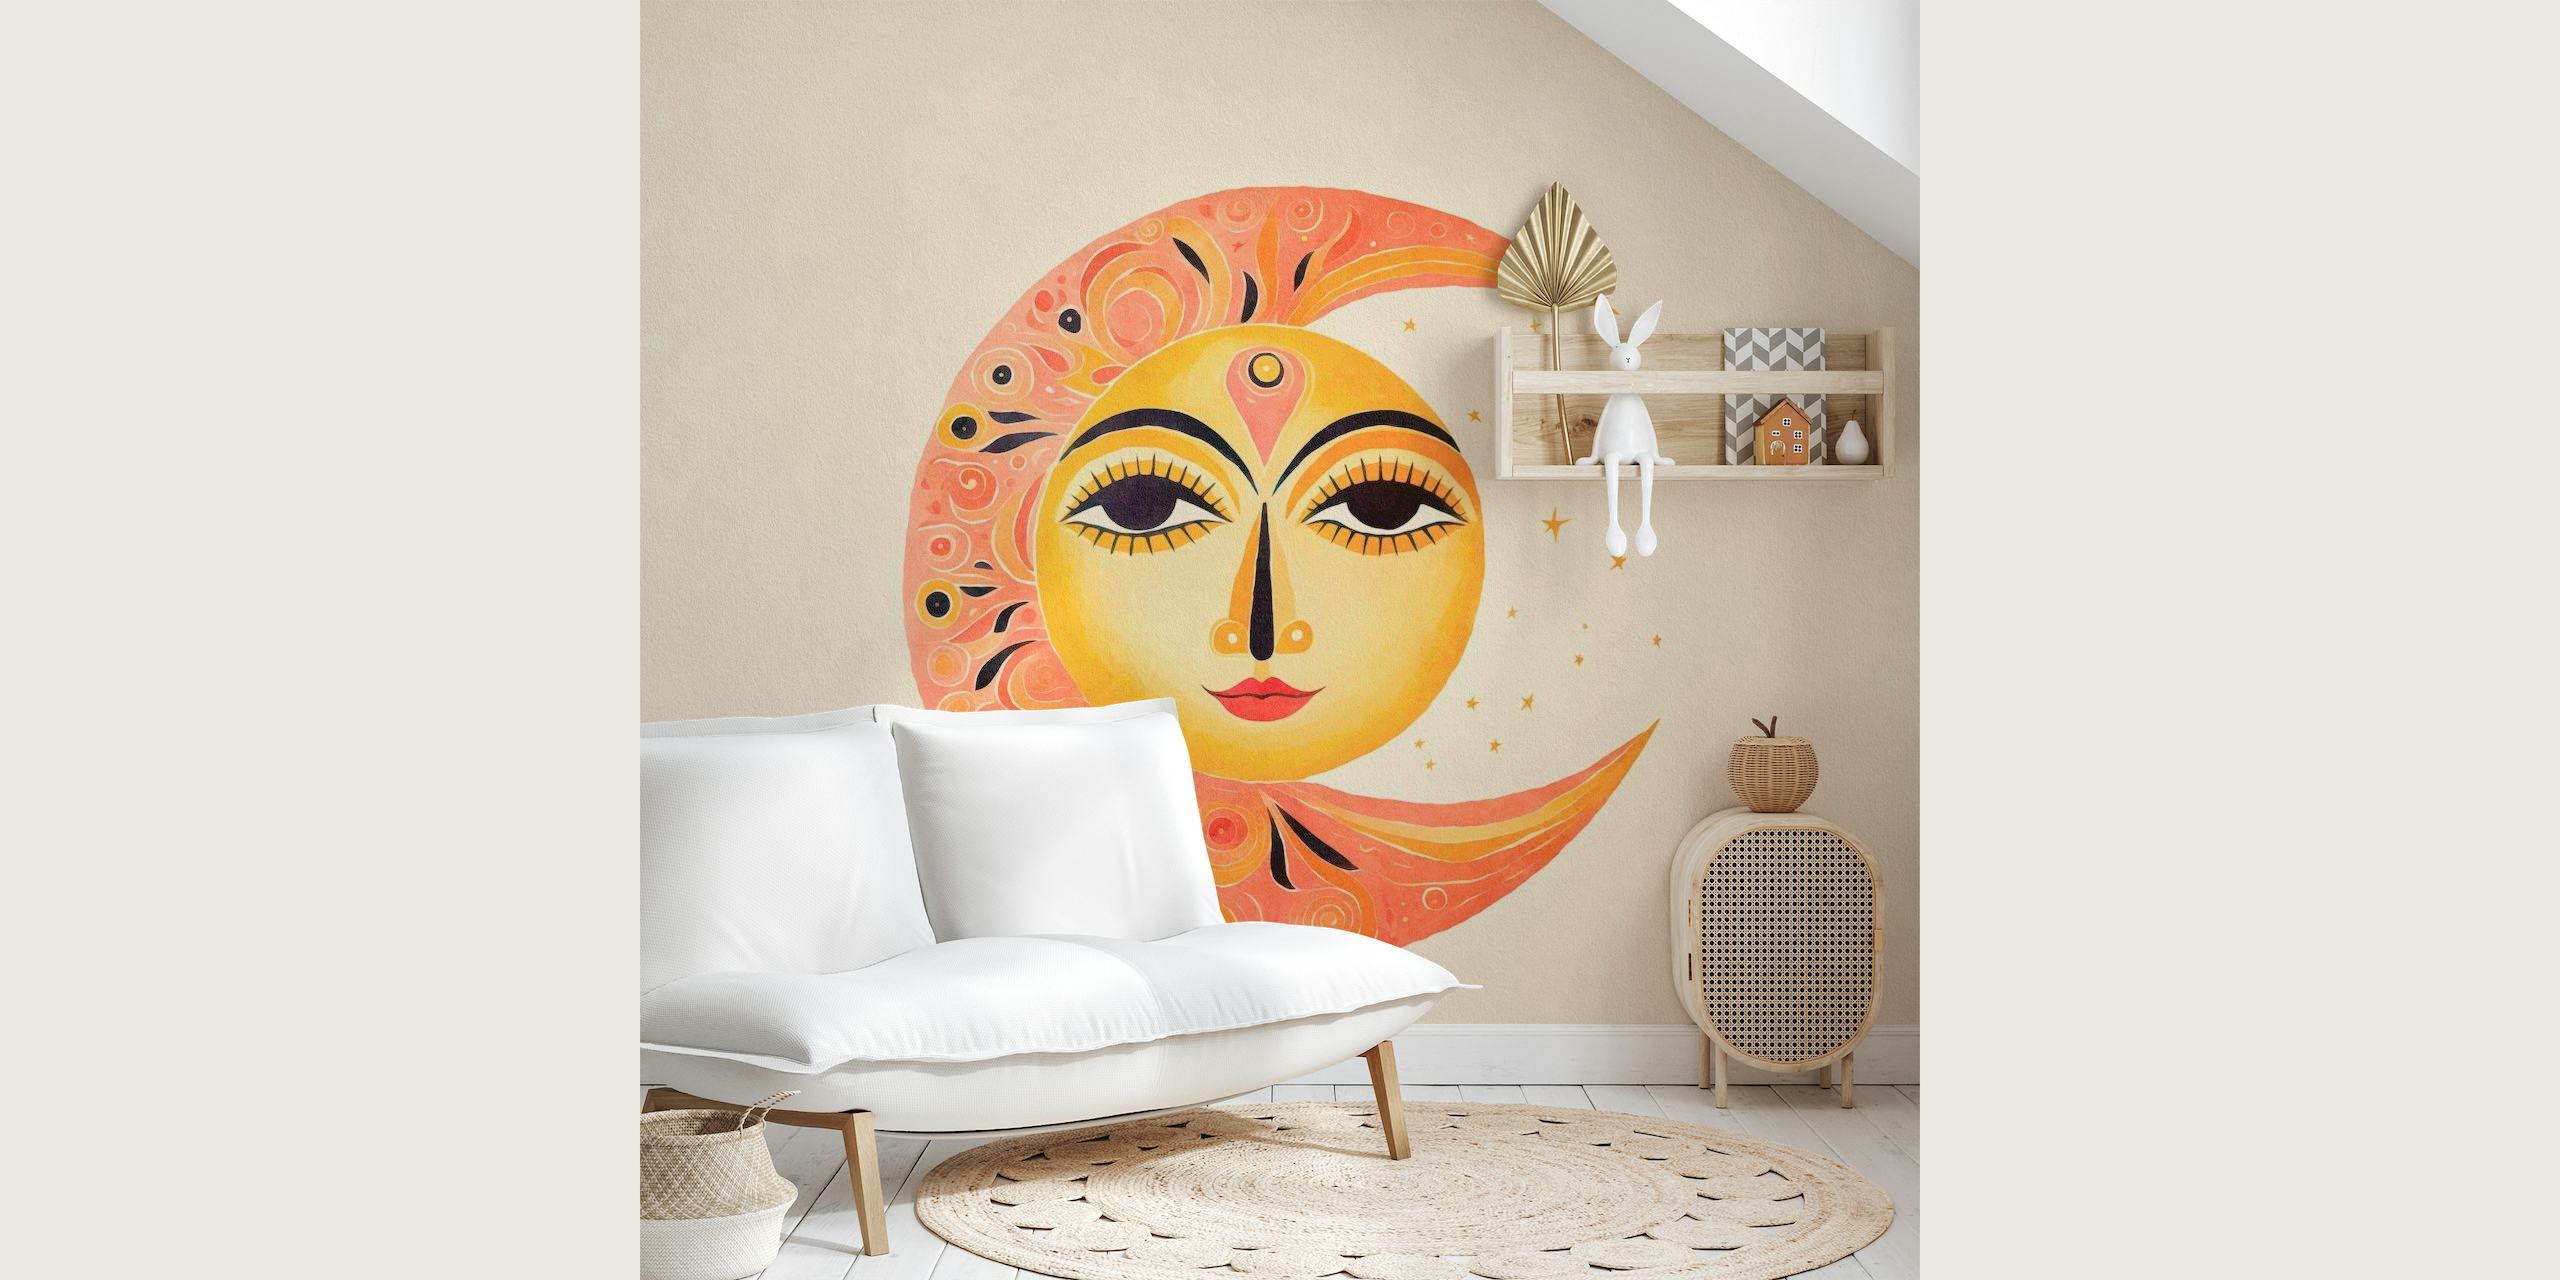 Whimsical Sun Moon Face wall mural with harmonious sun and moon design